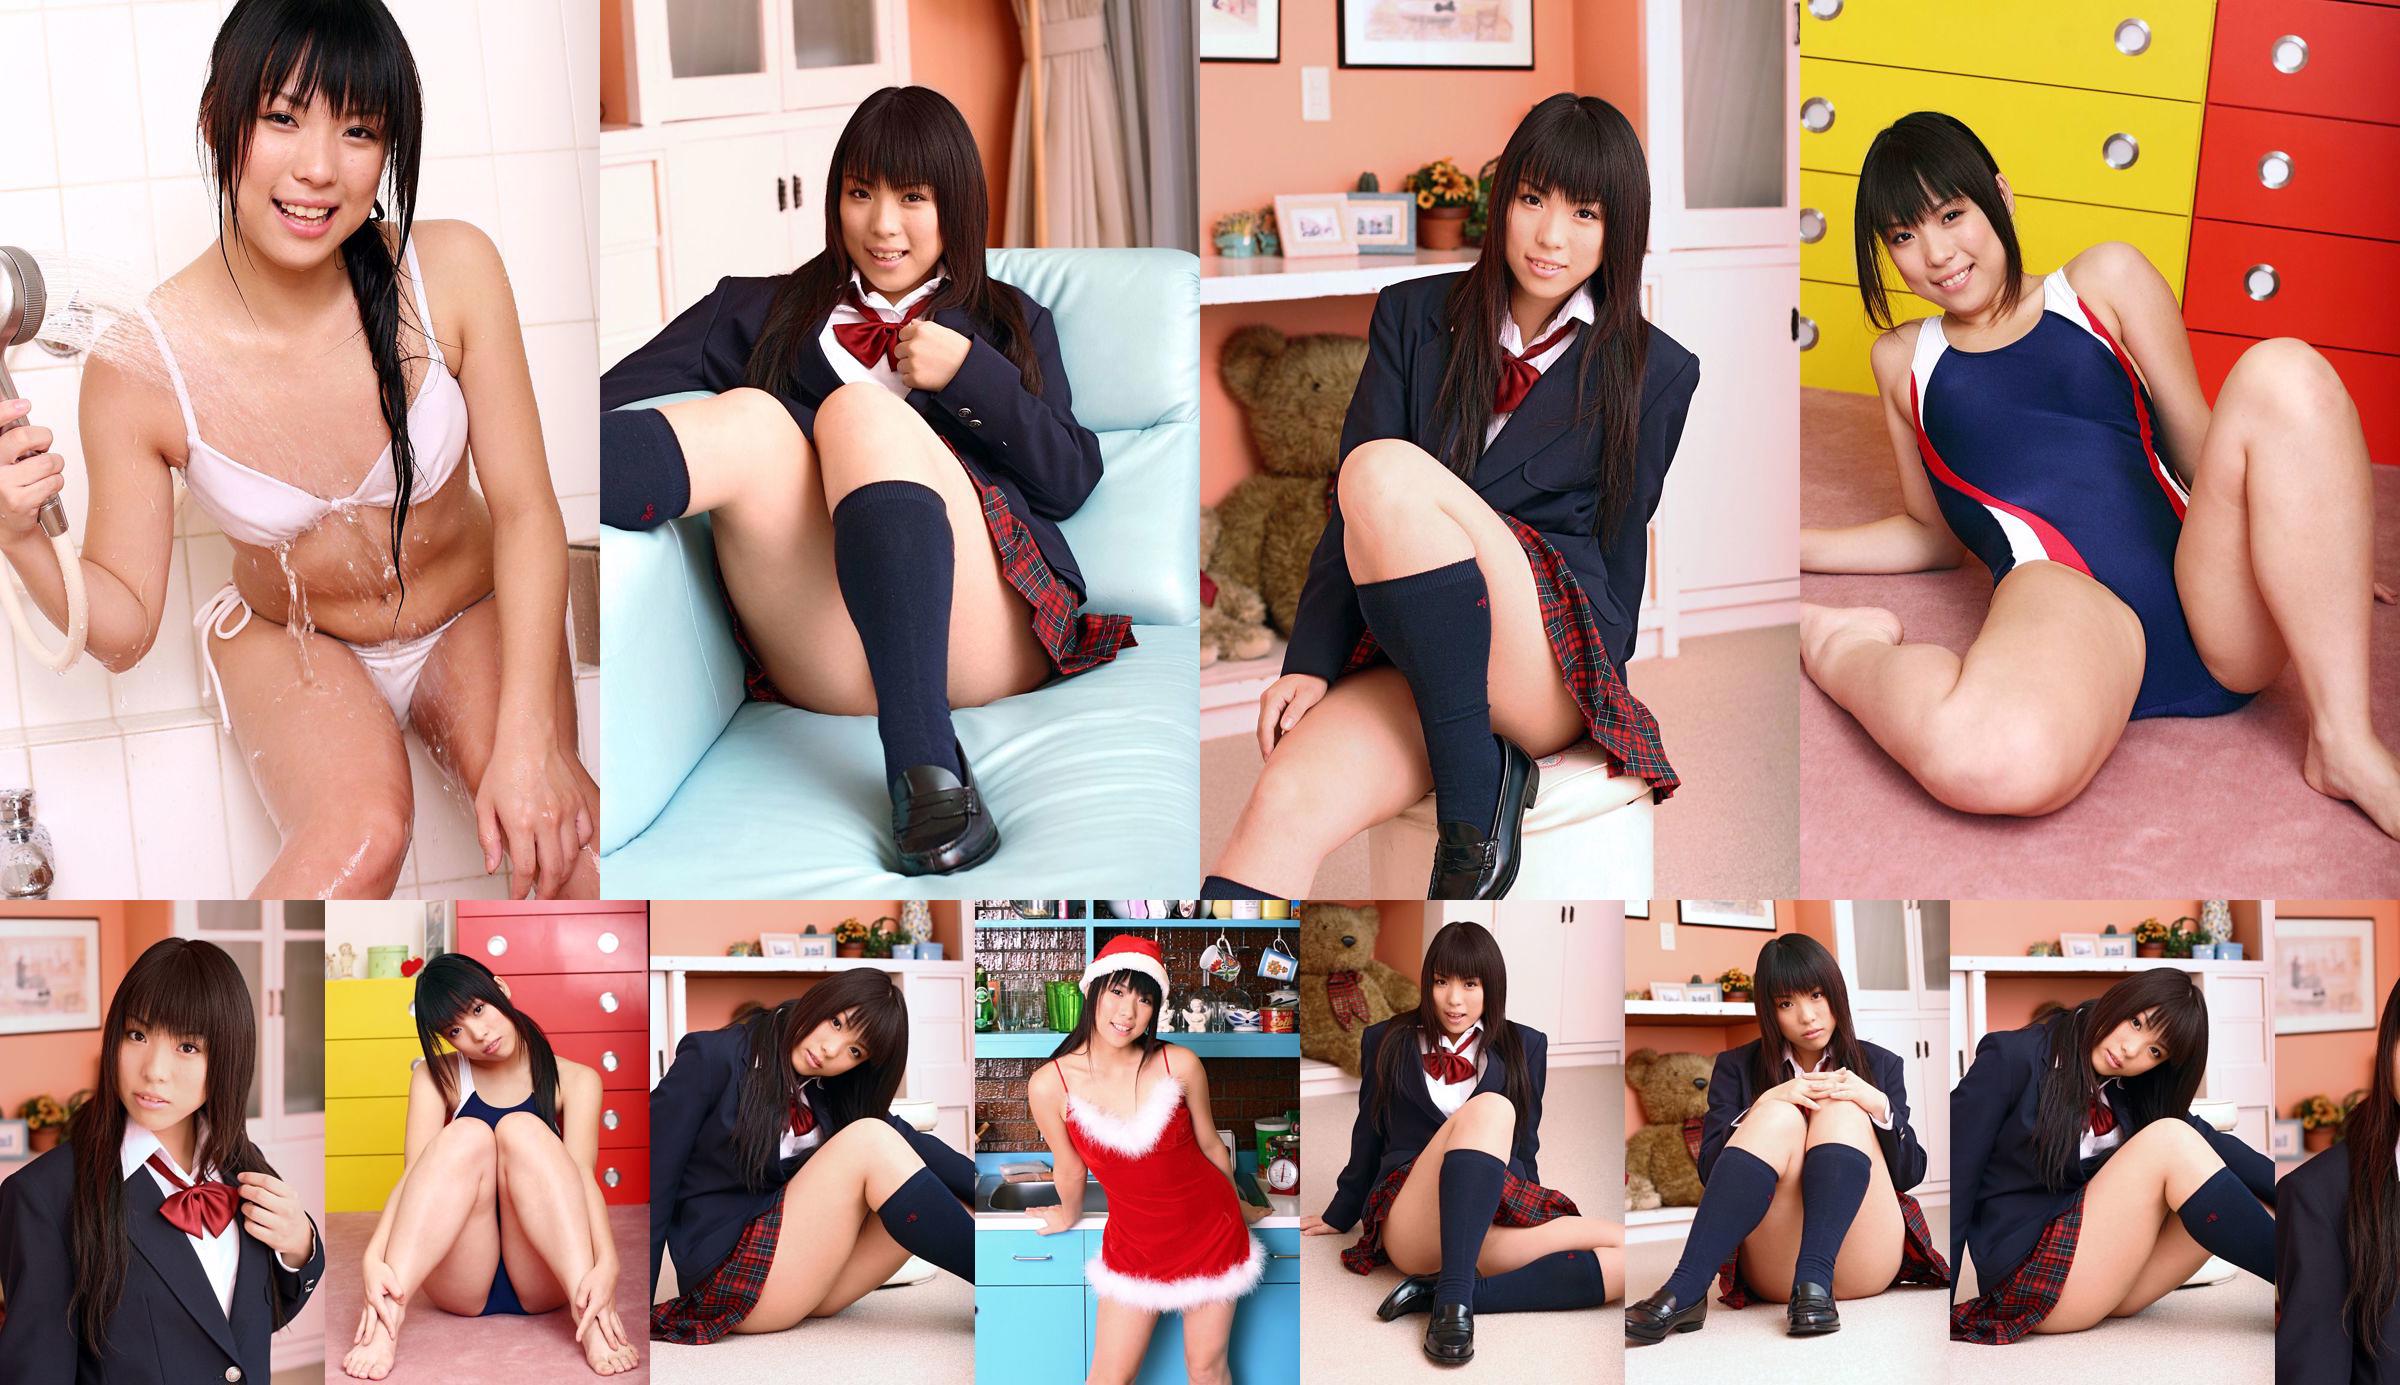 [DGC] Nr. 375 Chiharu Shirakawa Uniform schönes Mädchen Himmel No.8293e9 Seite 2